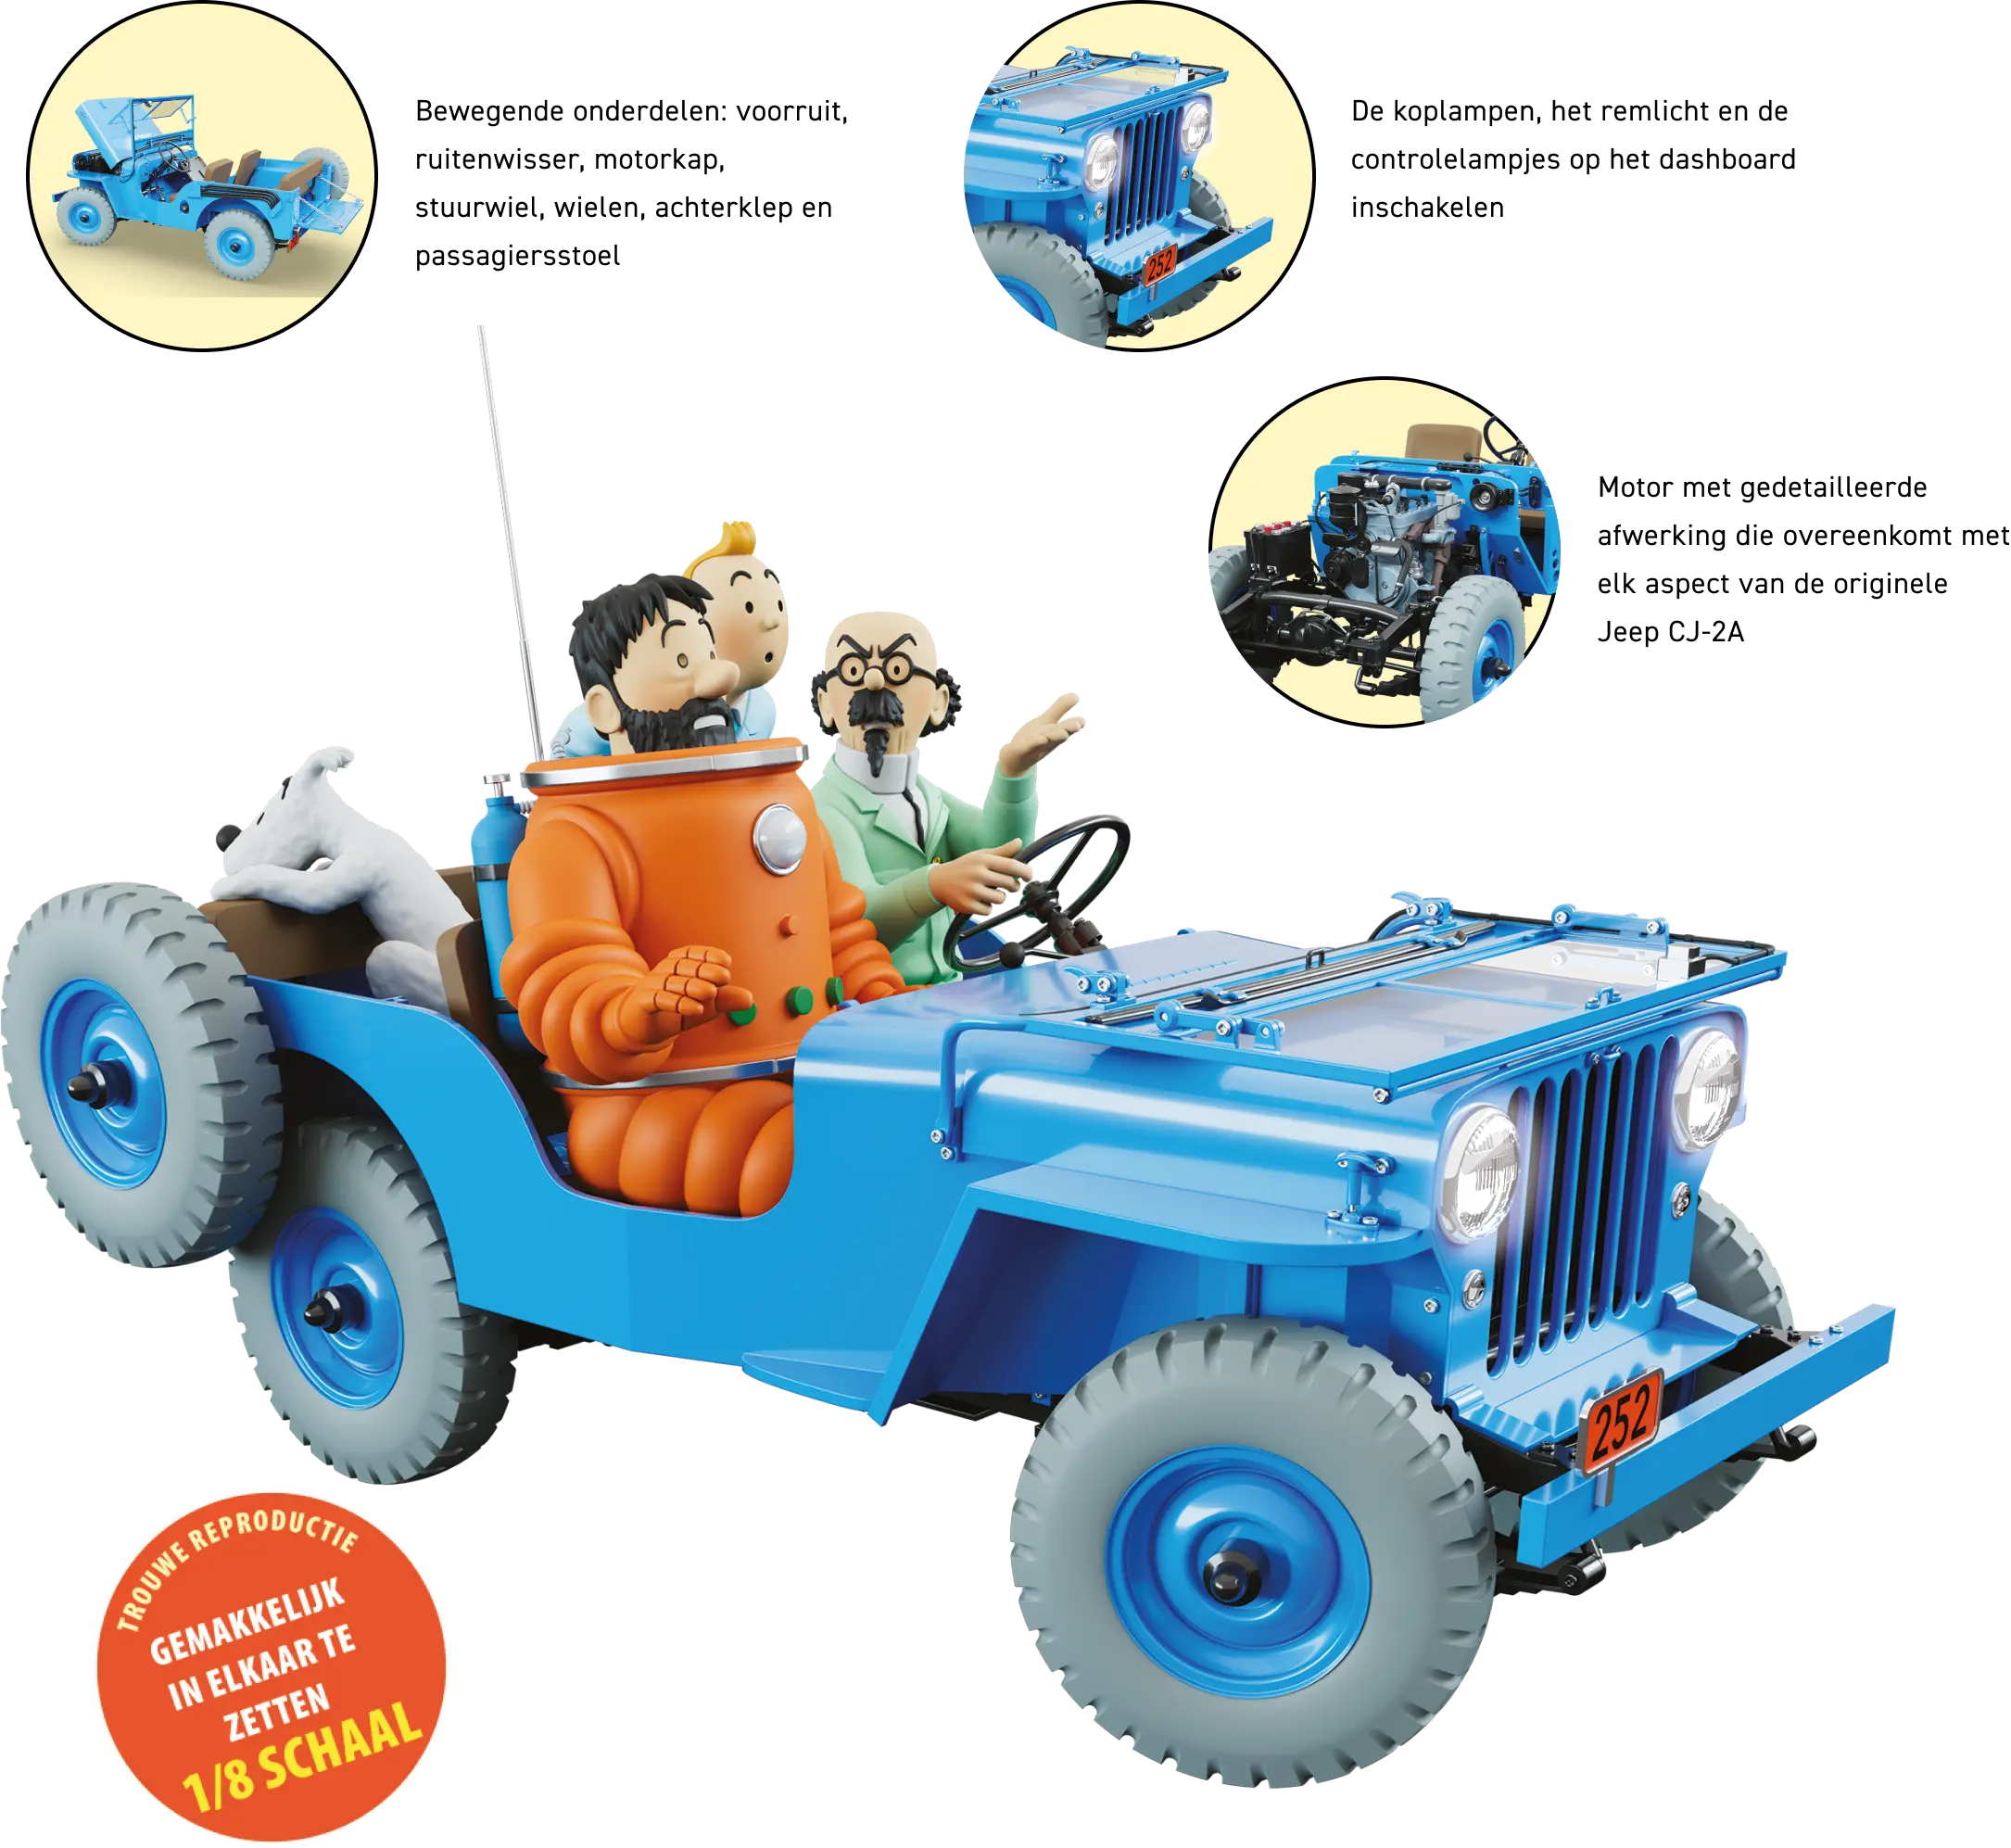 L'emblèmatique Jeep Lunaire de Tintin